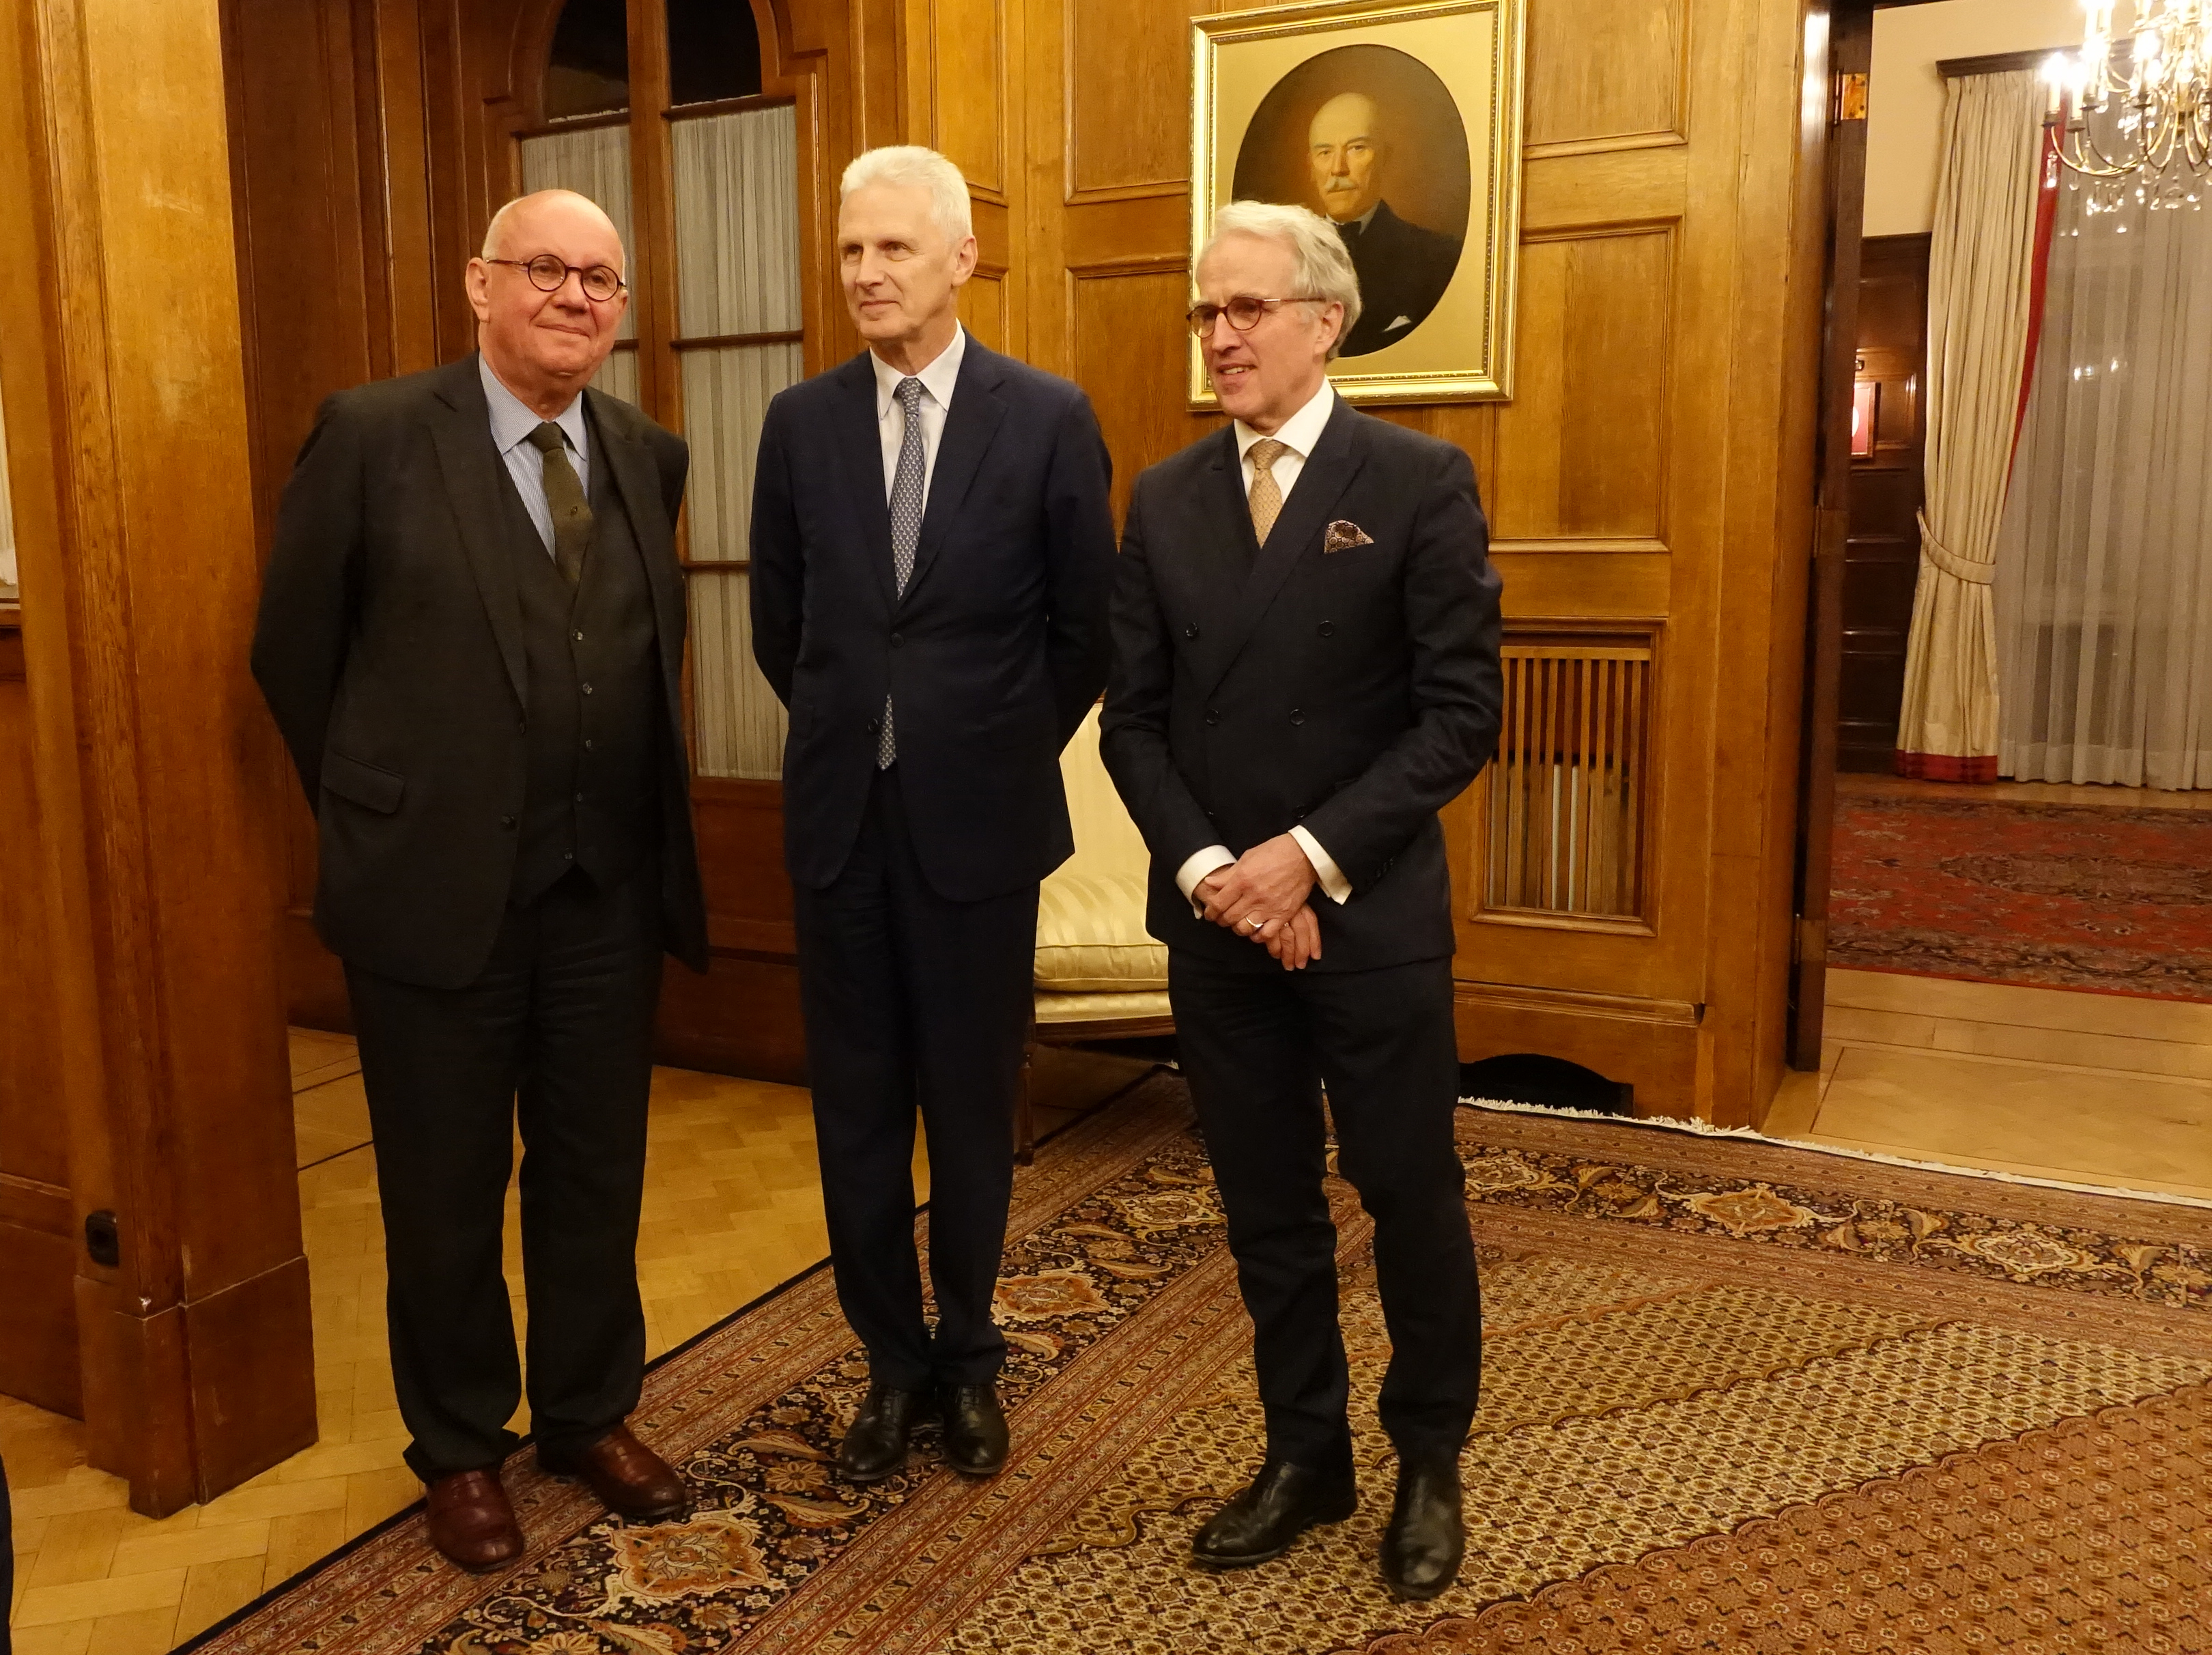 v.l.: DFG-Präsident Professor Strohschneider im Gespräch mit und dem Berater Fursenko und dem Botschafter Freiherr von Fritsch